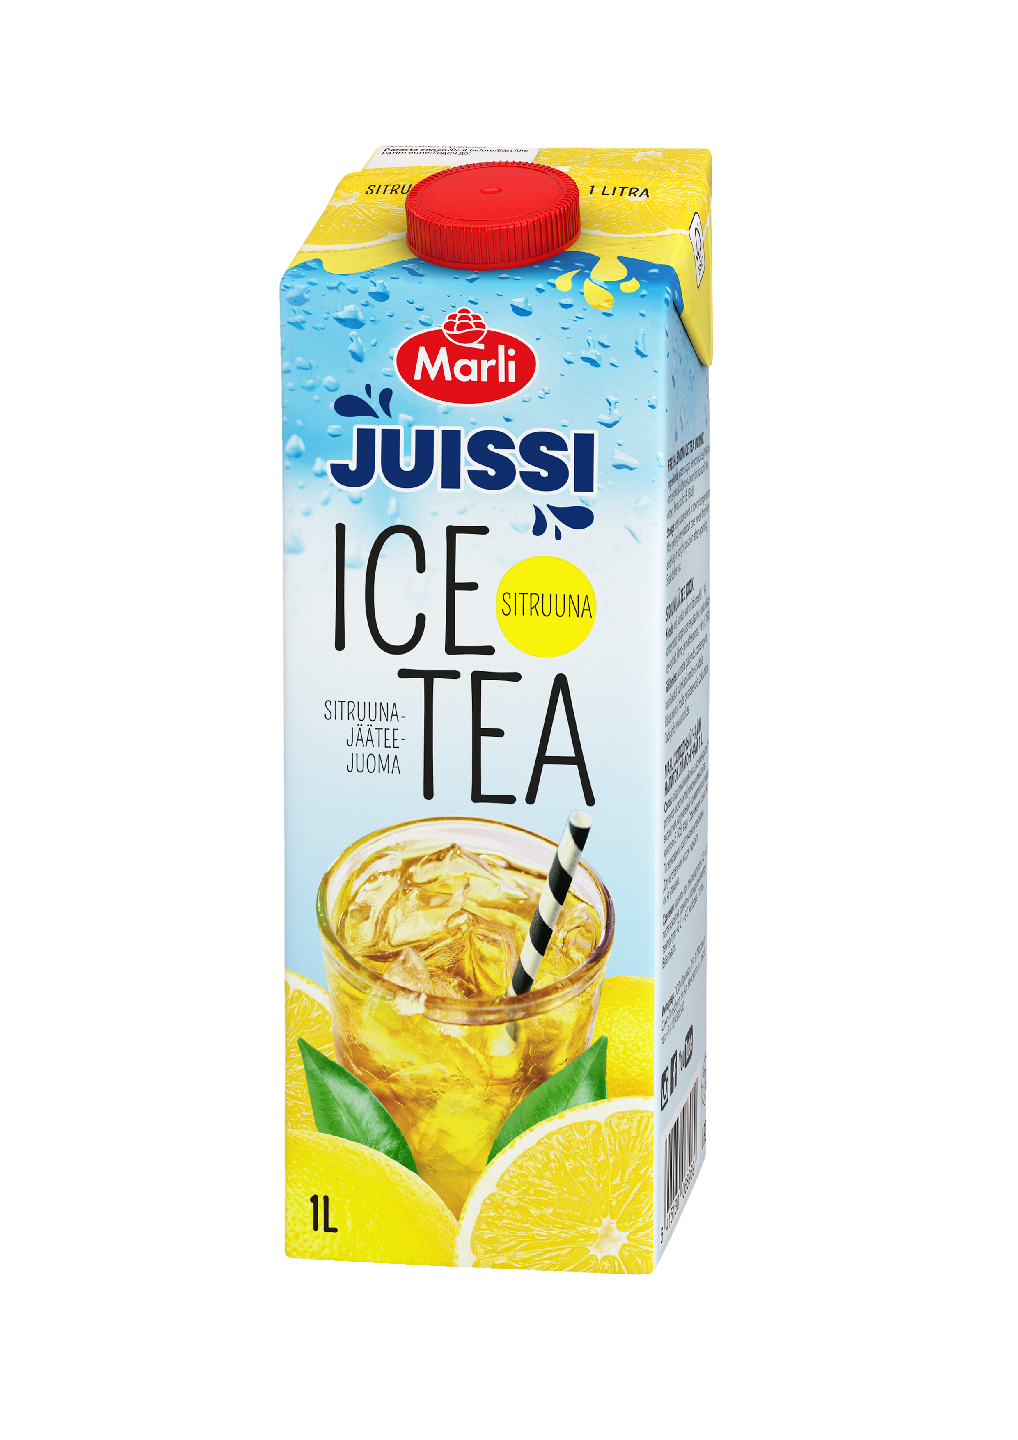 Marli Juissi Ice Tea lemon sitruunajääteejuoma 1l